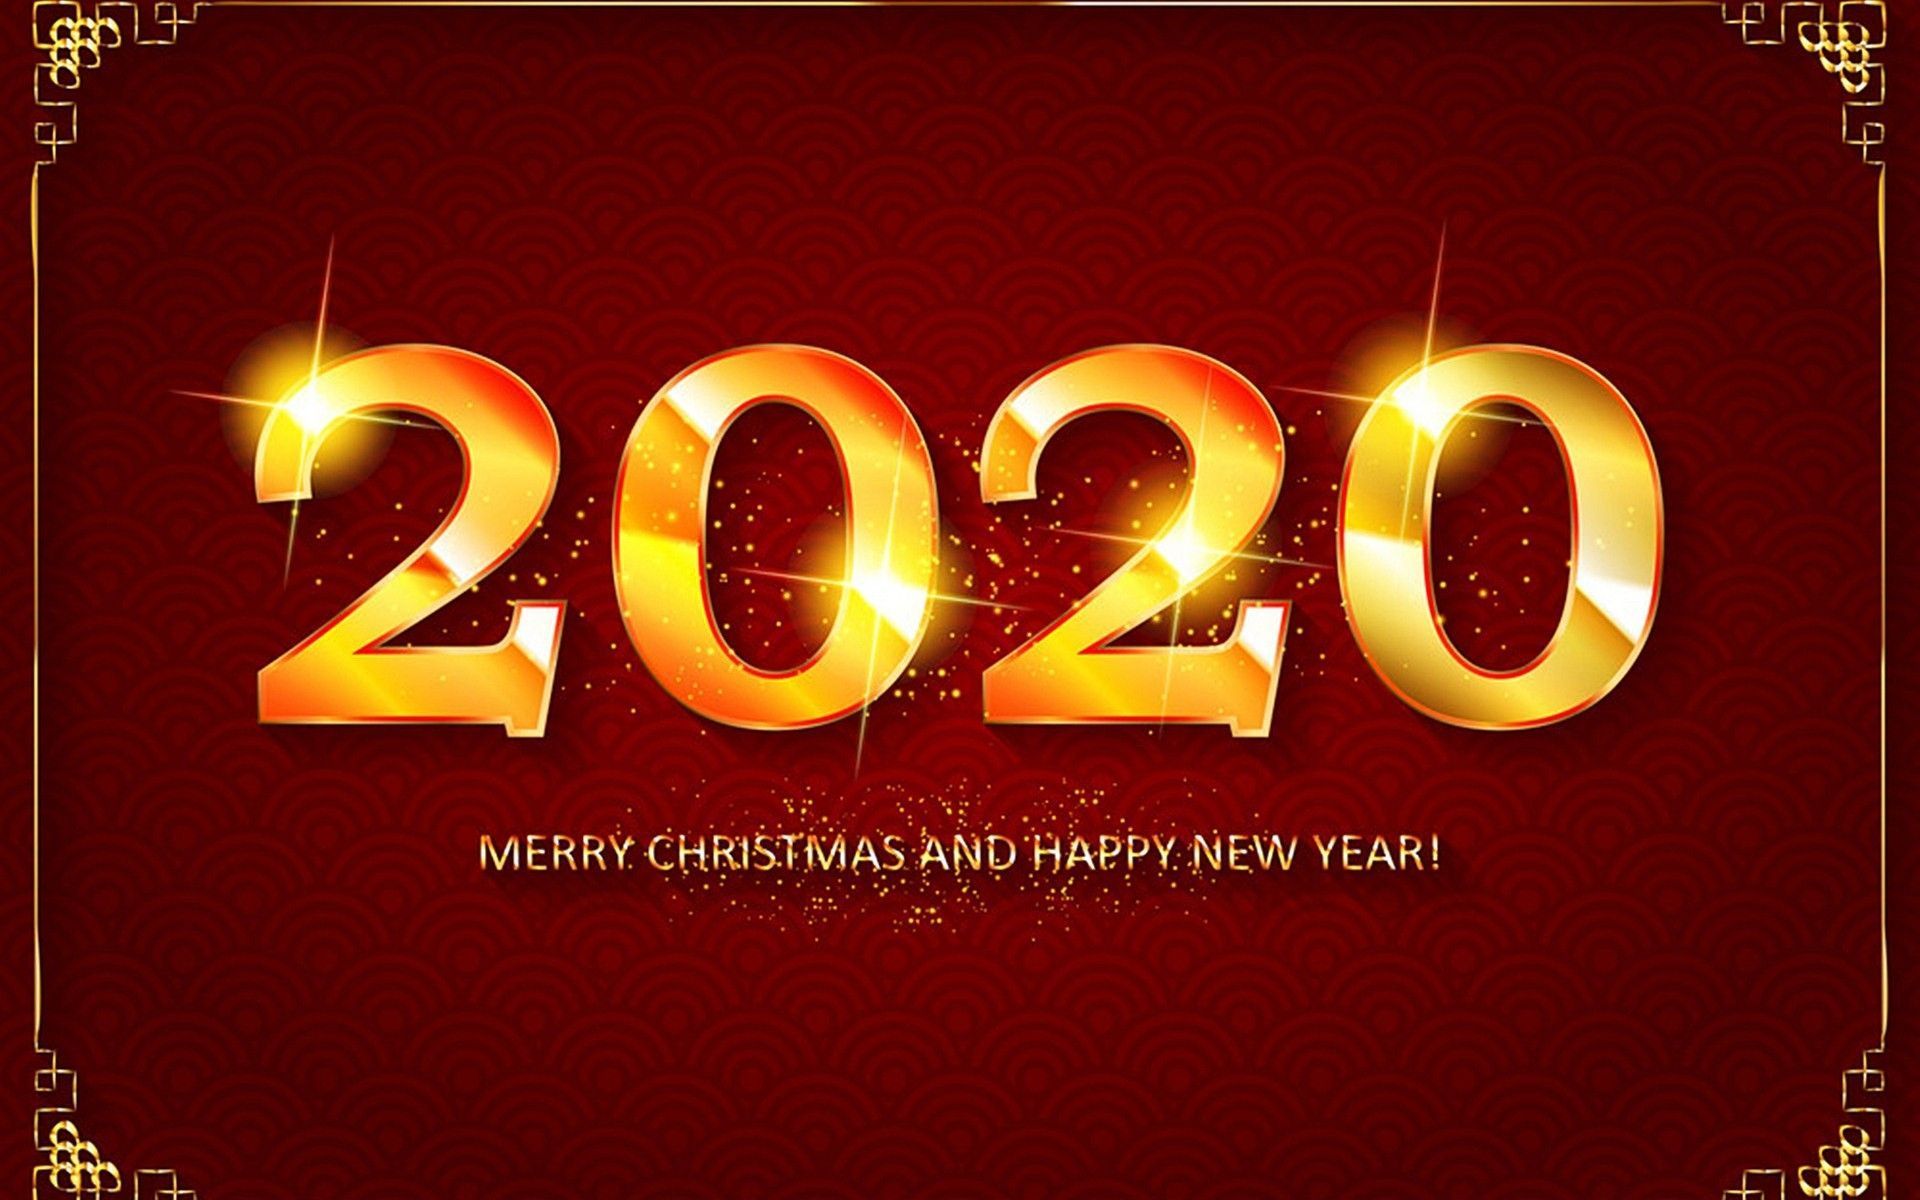 Happy New Year 2020 Wallpaper. Happy new year wallpaper, Happy new year image, Happy new year picture